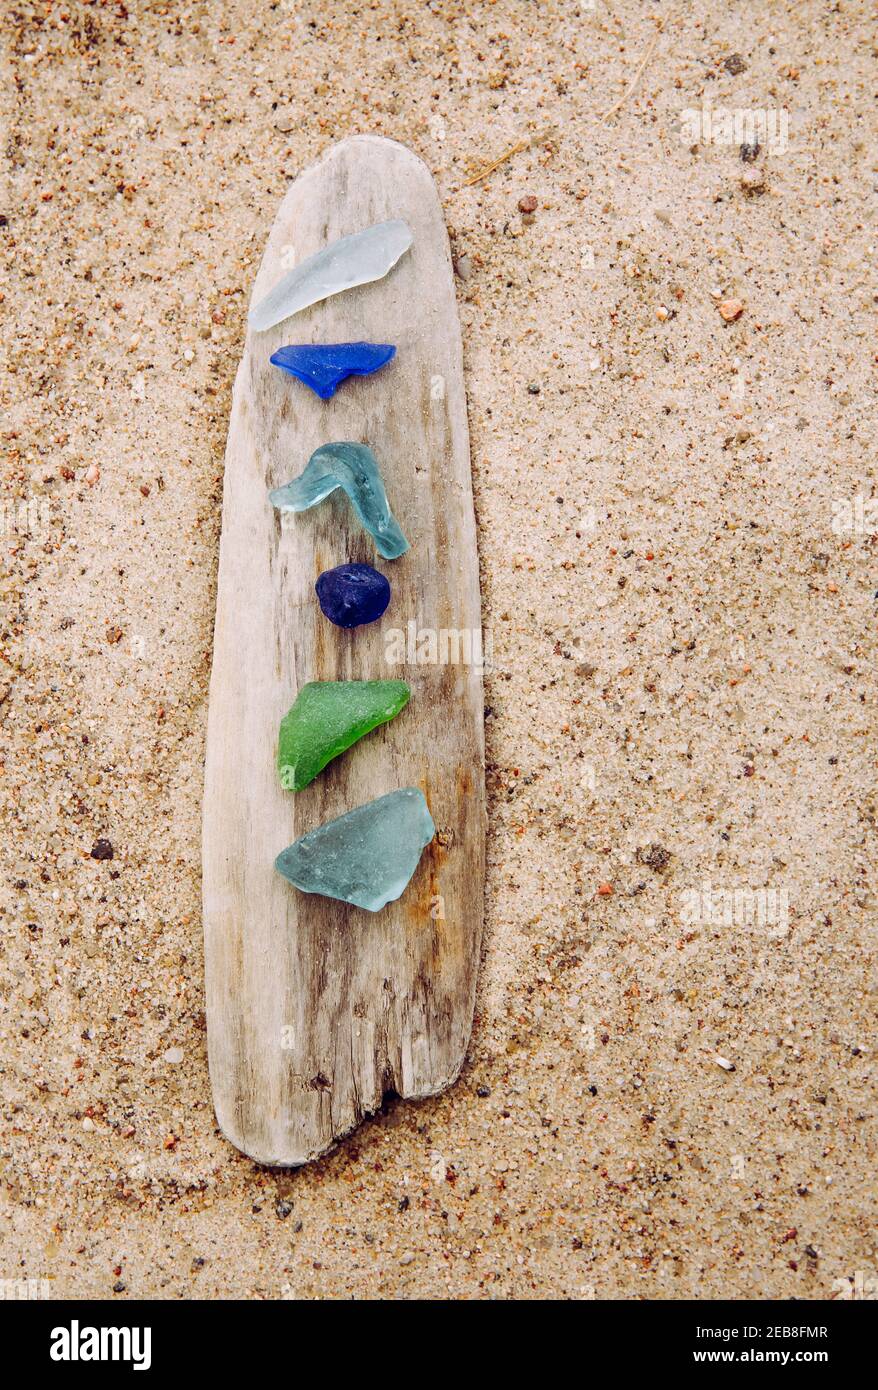 Verschiedene Farben blau, grün, weißes Meerglas oder Strandglas auf Treibholz im Strand auf Sand. Glas war einmal Flaschenstücke und jetzt ist das Meer gestolpert. Stockfoto